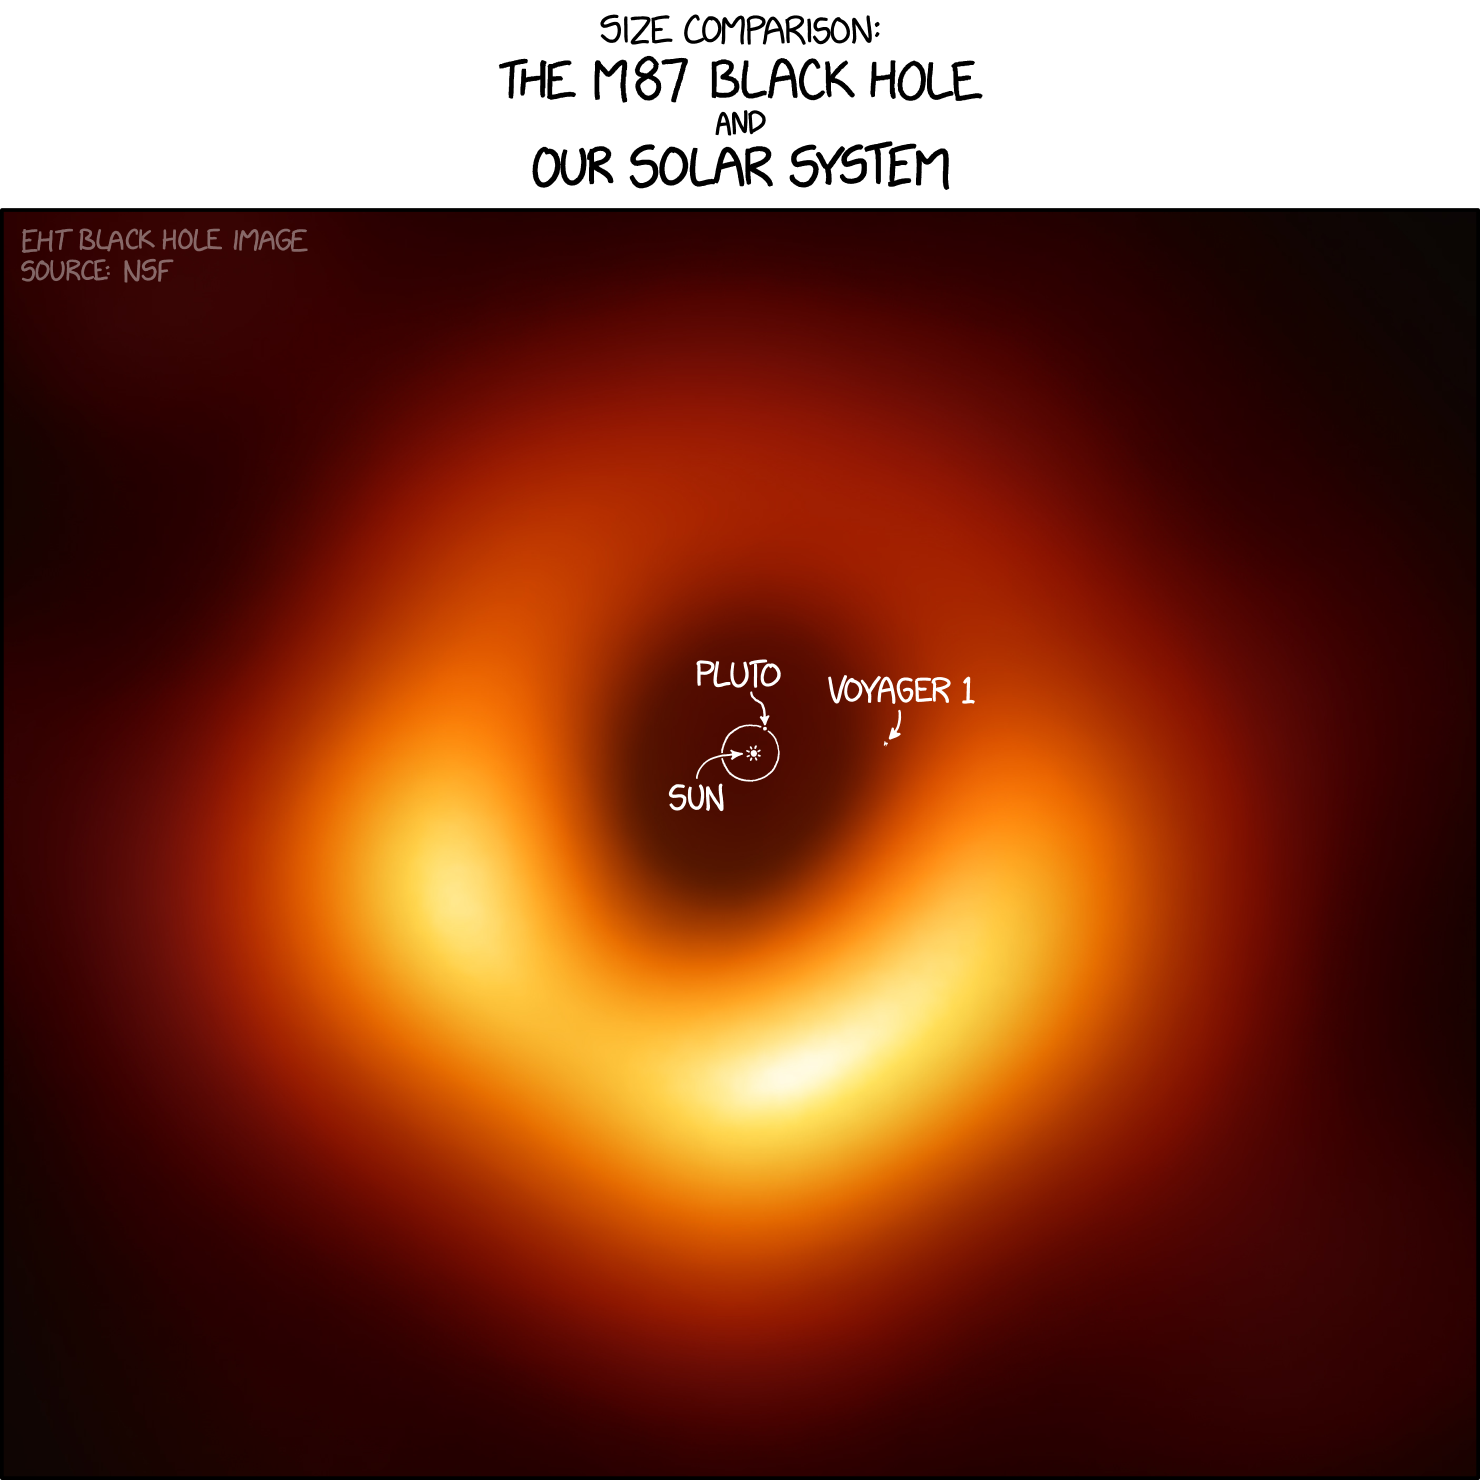 m87_black_hole_size_comparison_2x.png